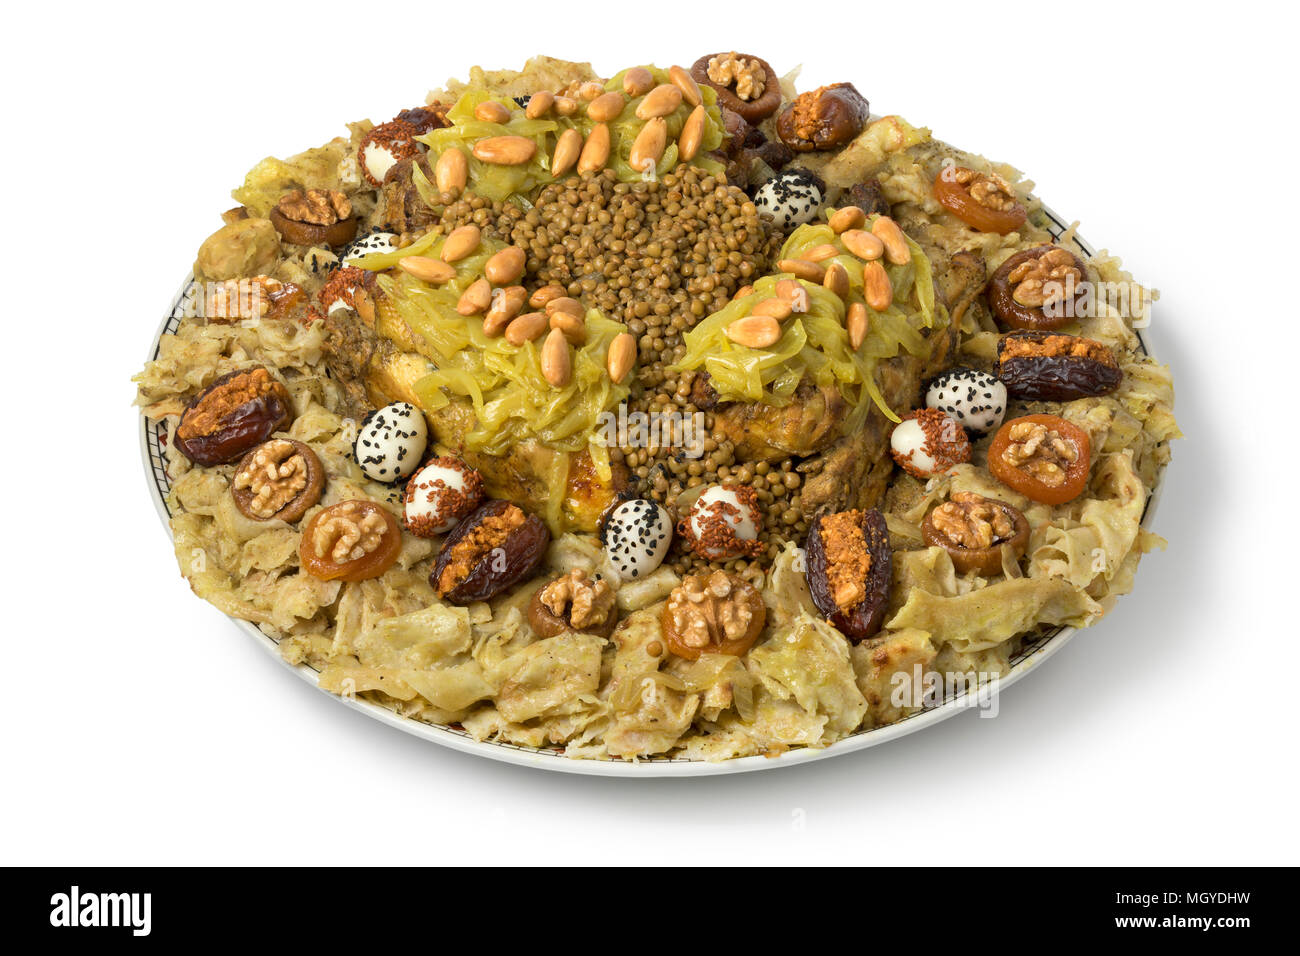 Teller mit festlichen traditionelle marokkanische Rfissa mit Sauce serviert und decorared mit Wachteleier, Samen, Früchte und Nüsse auf weißem Hintergrund Stockfoto